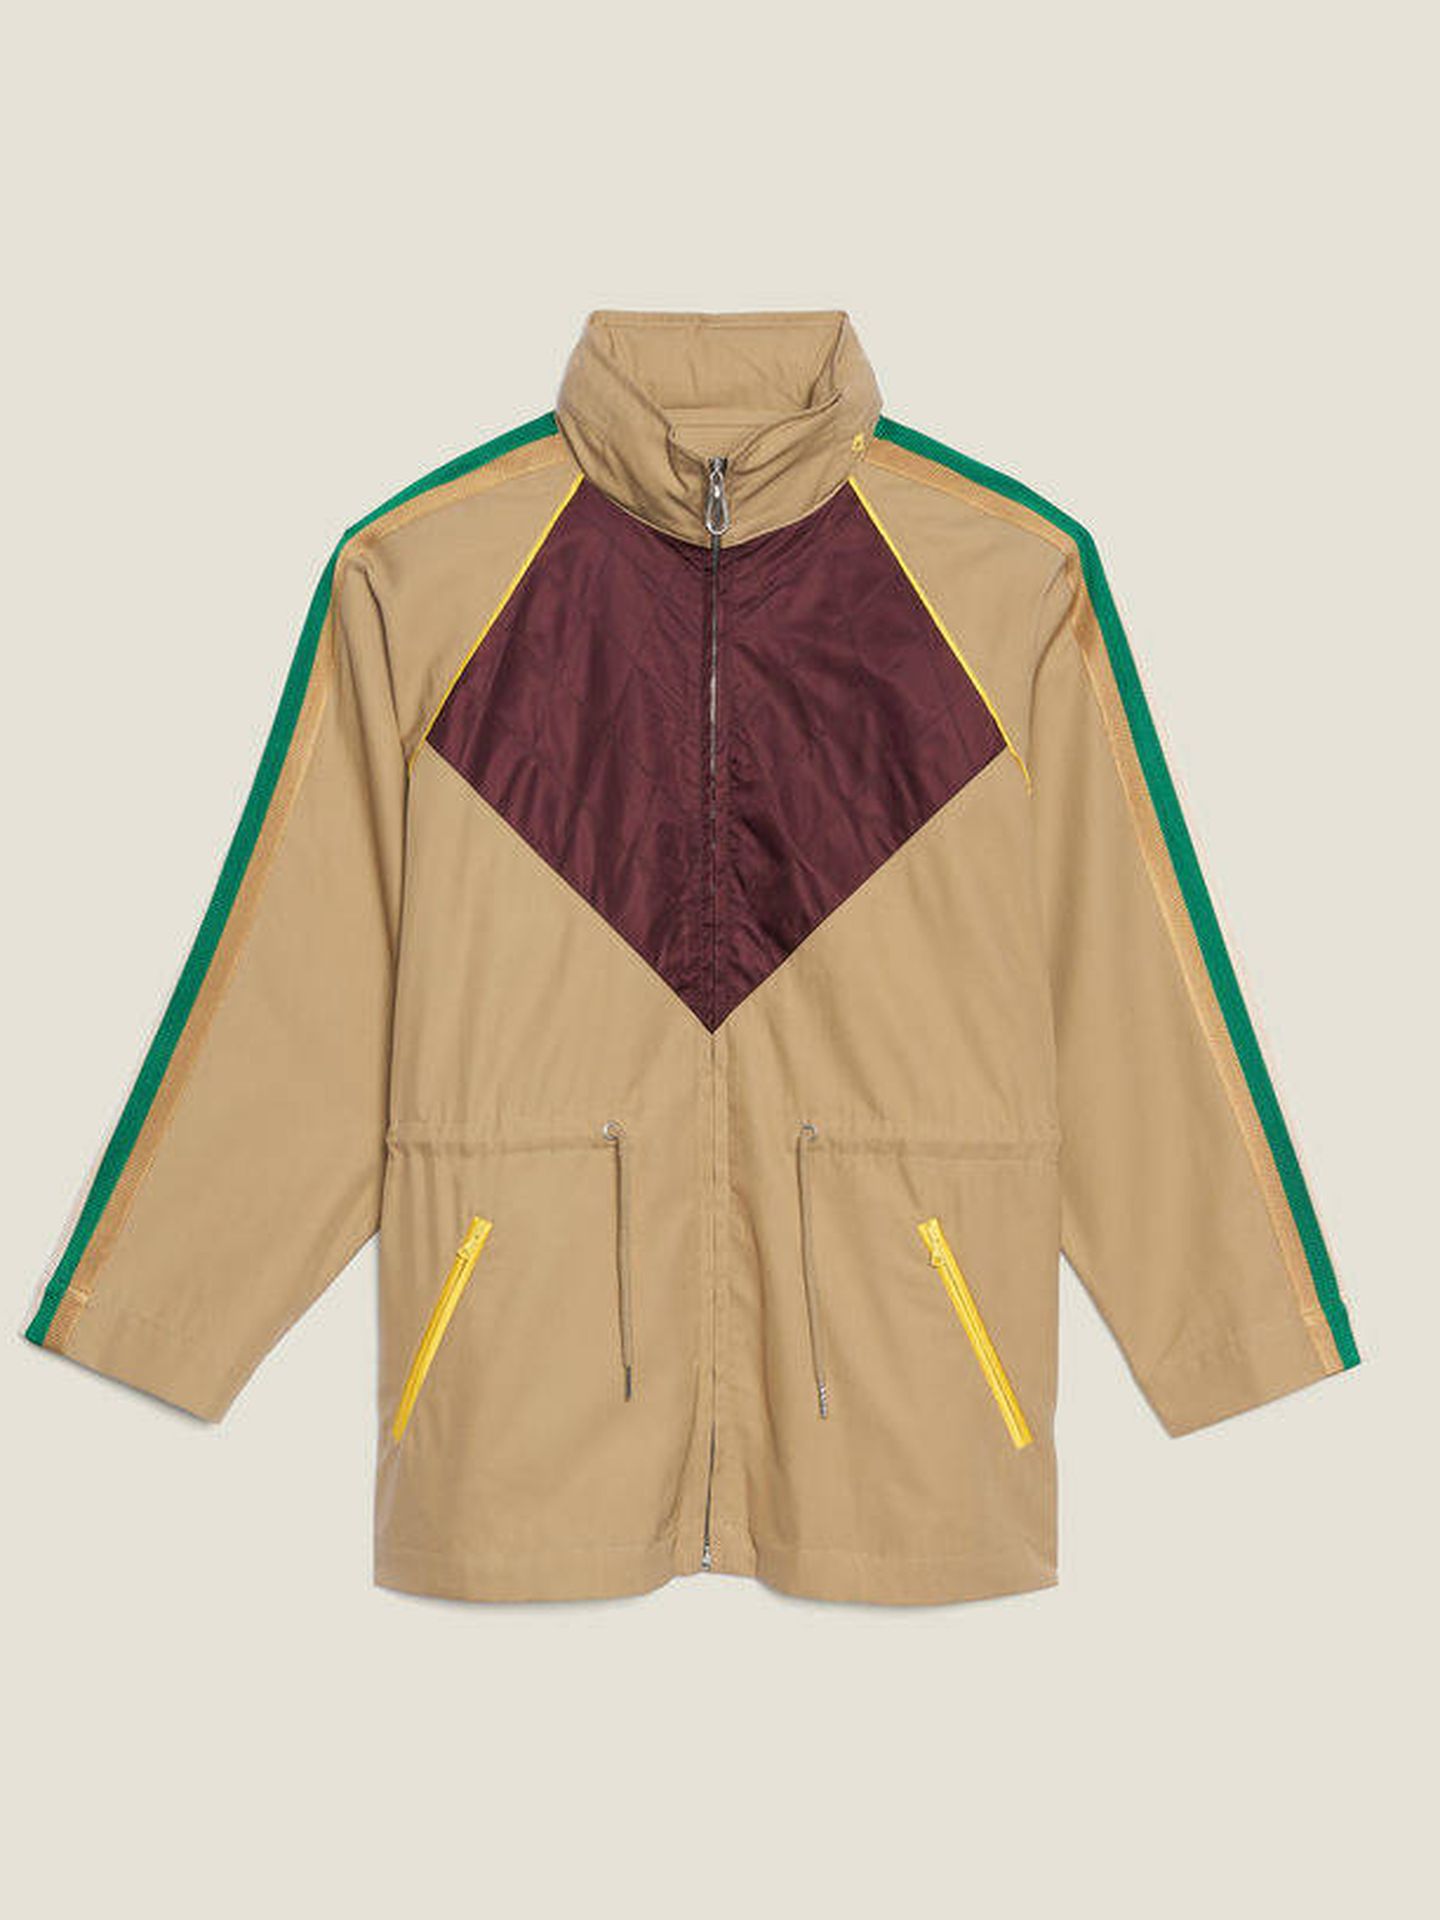 La chaqueta de Sandro que lleva Sara valorada en 345 € (Cortesía)